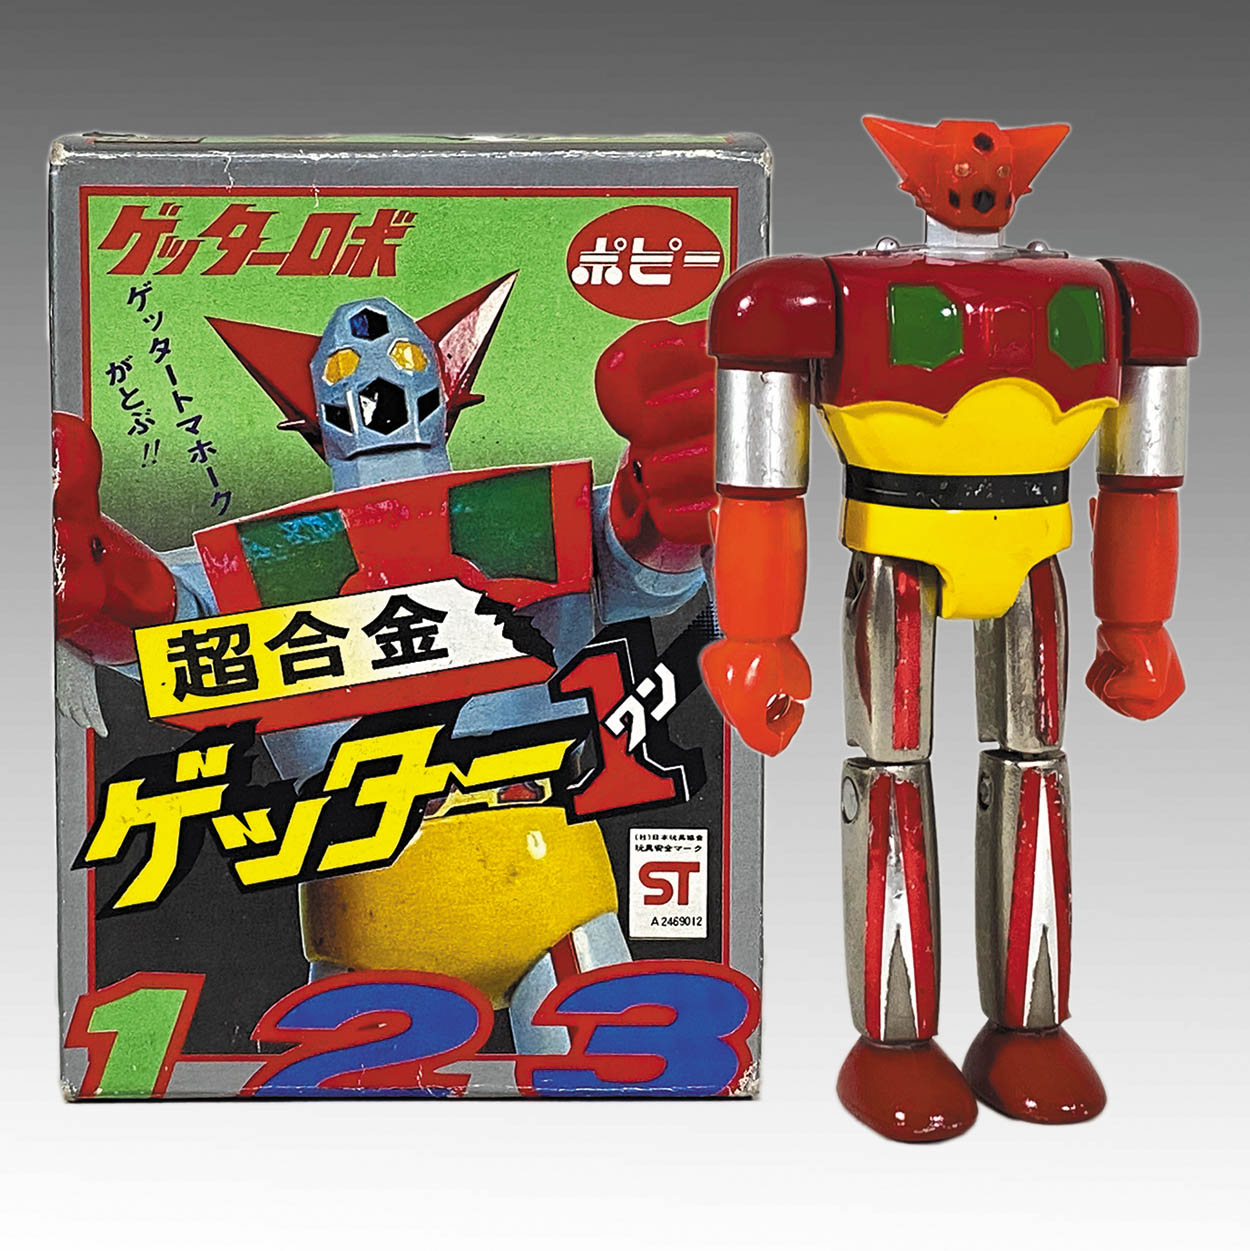 ポピー 超合金 ゲッター1 ゲッターロボット フィギュア 永井豪